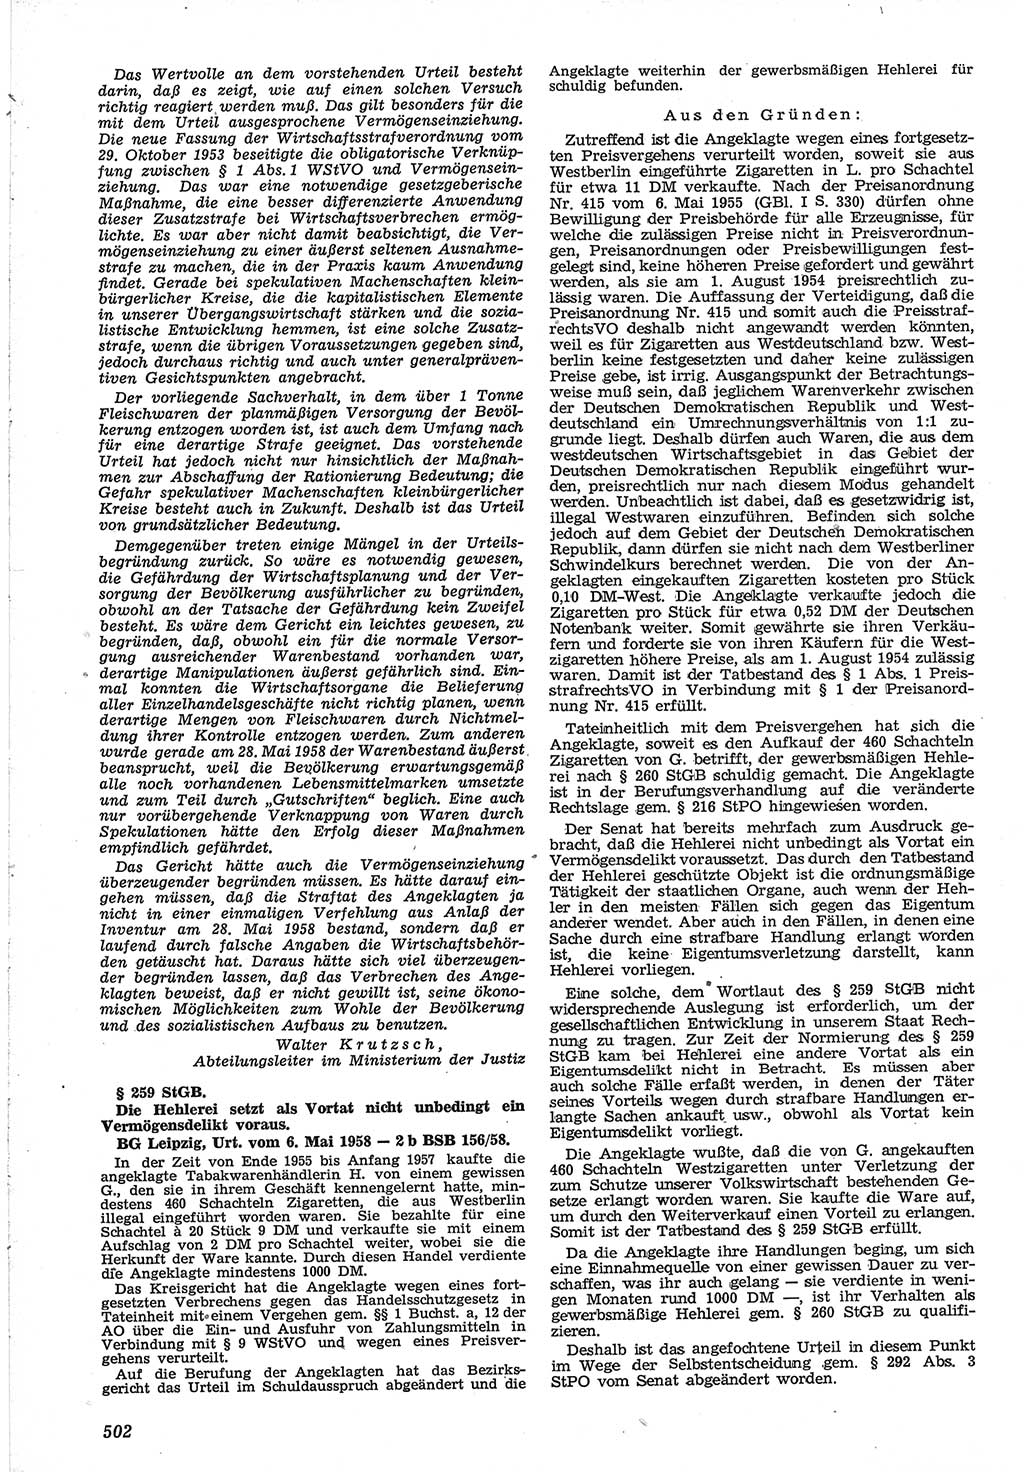 Neue Justiz (NJ), Zeitschrift für Recht und Rechtswissenschaft [Deutsche Demokratische Republik (DDR)], 12. Jahrgang 1958, Seite 502 (NJ DDR 1958, S. 502)